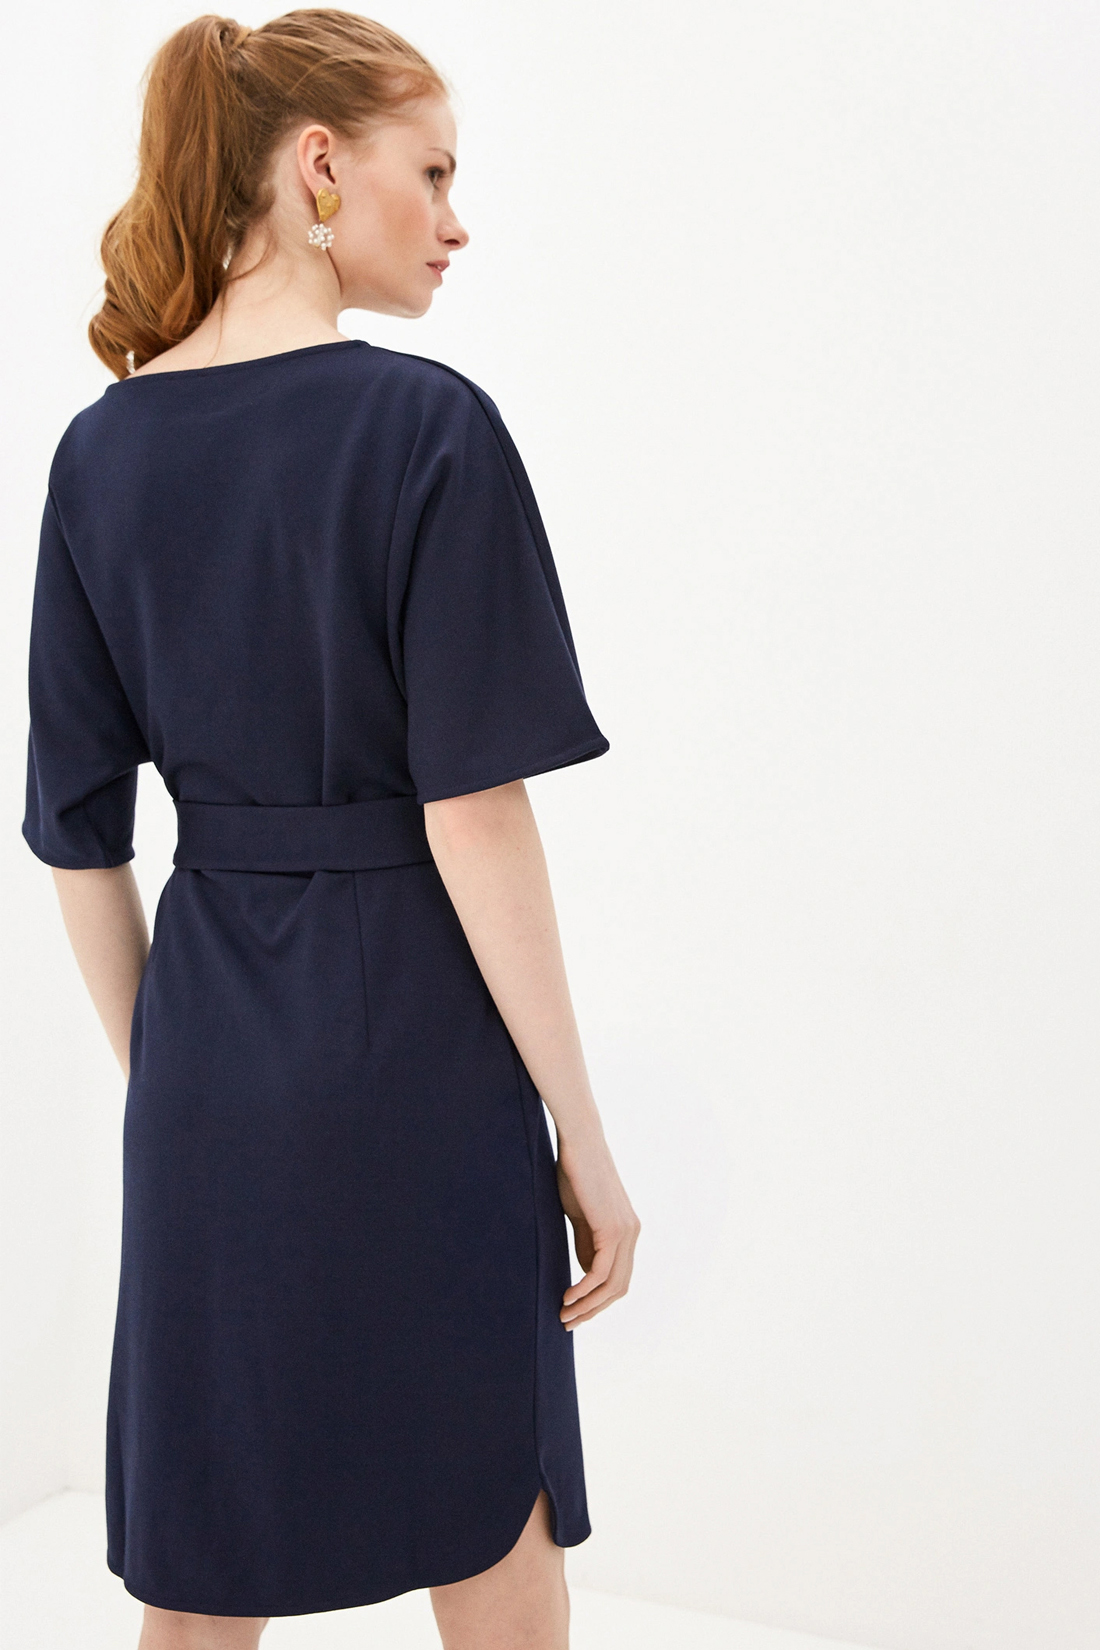 Платье с поясом (арт. baon B450021), размер XL, цвет синий Платье с поясом (арт. baon B450021) - фото 2